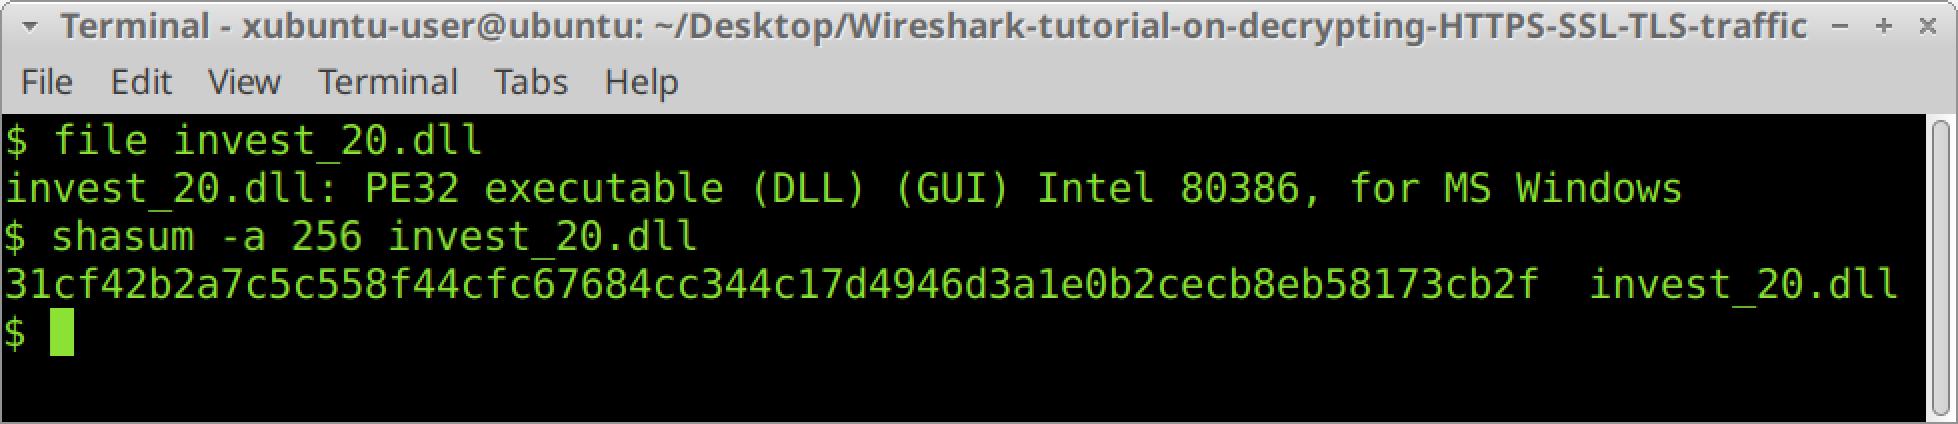 HTTPSトラフィック復号化チュートリアル用のスクリーンショット。BSD、Linux、または Mac OS 環境でターミナルウィンドウを開き、fileコマンドを使用してこれが DLL ファイルであることを確認した後、ファイルの SHA256 ハッシュを取得する方法を示している 